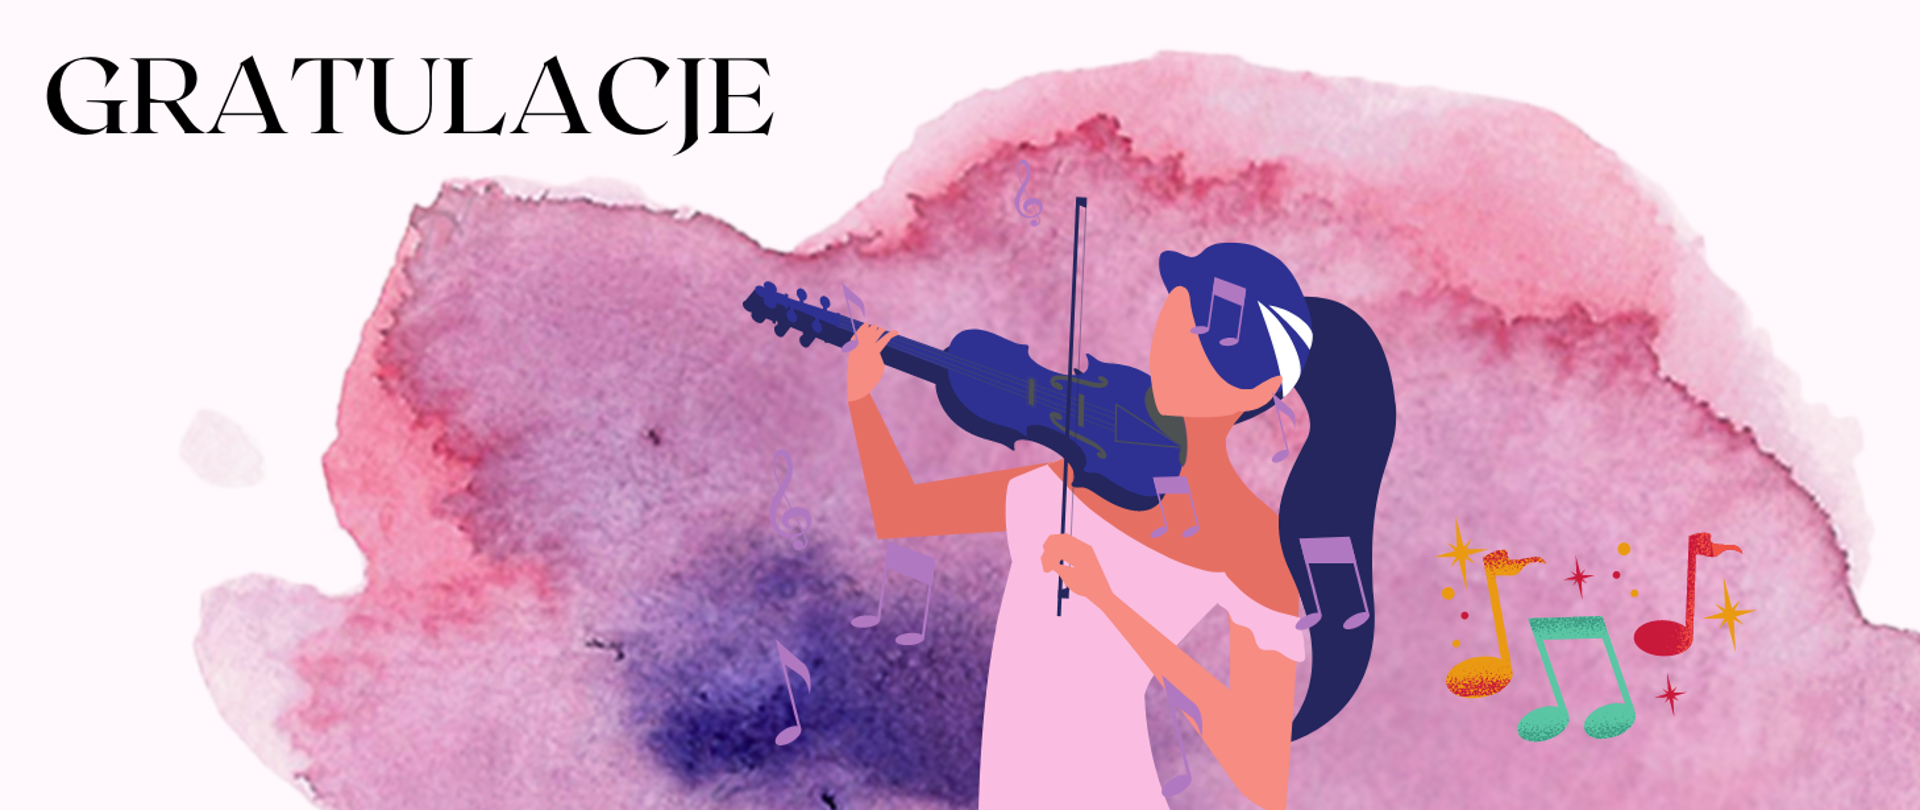 W centralnej części obrazka tło różowe, a na nim wizerunek kobiety grającej na skrzypcach. Obok niej kolorowe nutki. Skrzypce i włosy kobiety są w kolorze granatowym, natomiast sukienka w kolorze blado różowym. W lewym górnym roku czarny napis: "gratulacje".